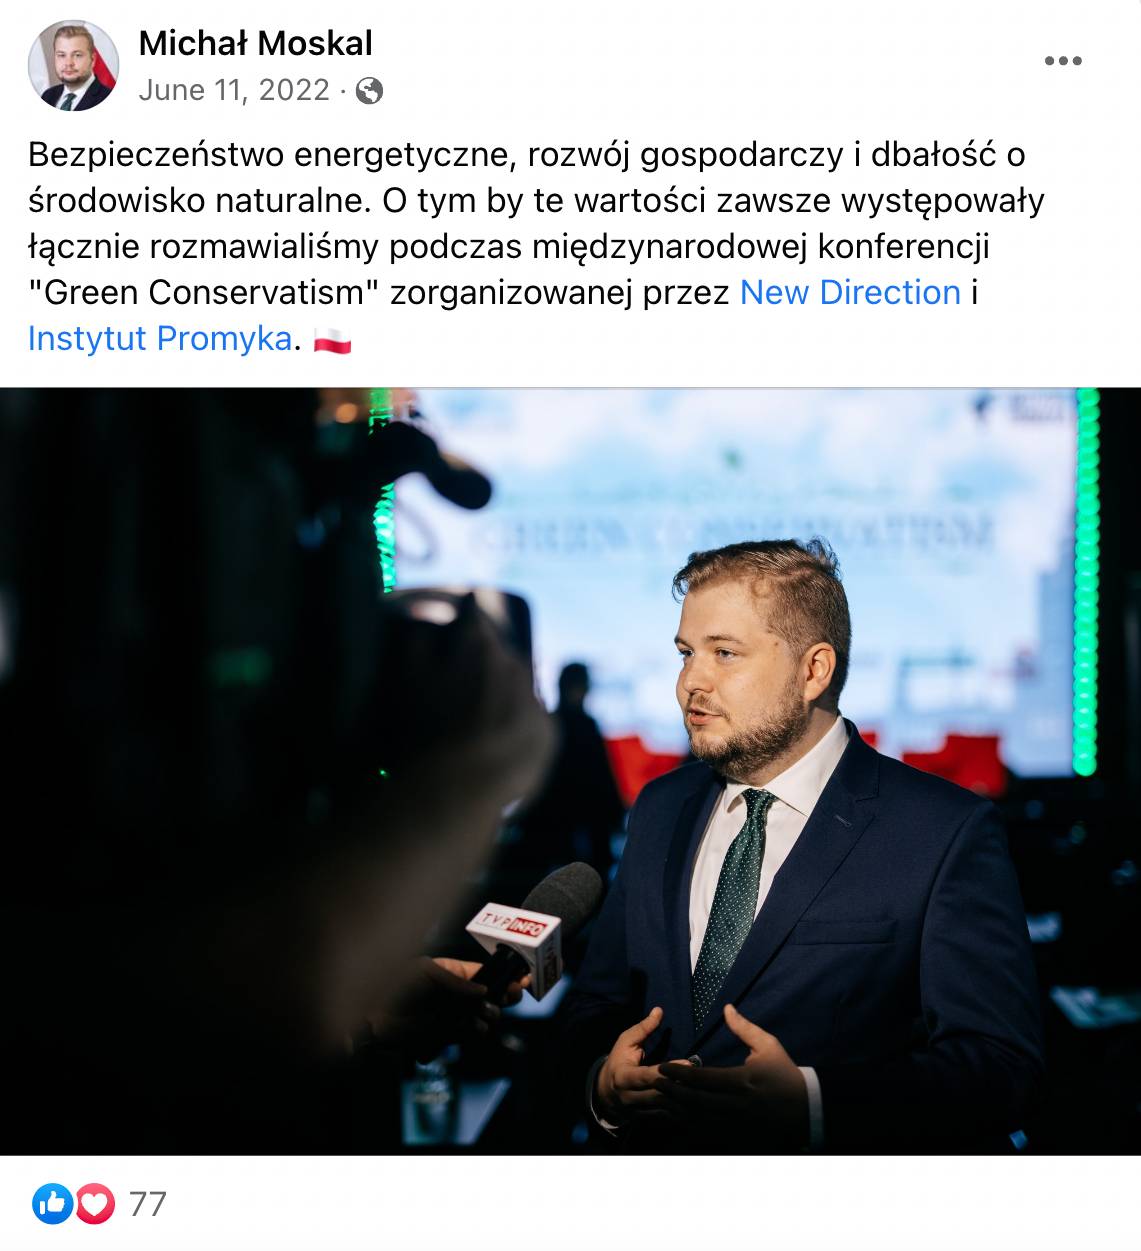 Michał Moskal przed kamerami TVP Info opowiada o konferencji Green Conservatism zorganizowanej przez Instytut Promyka i fundację New Direction.